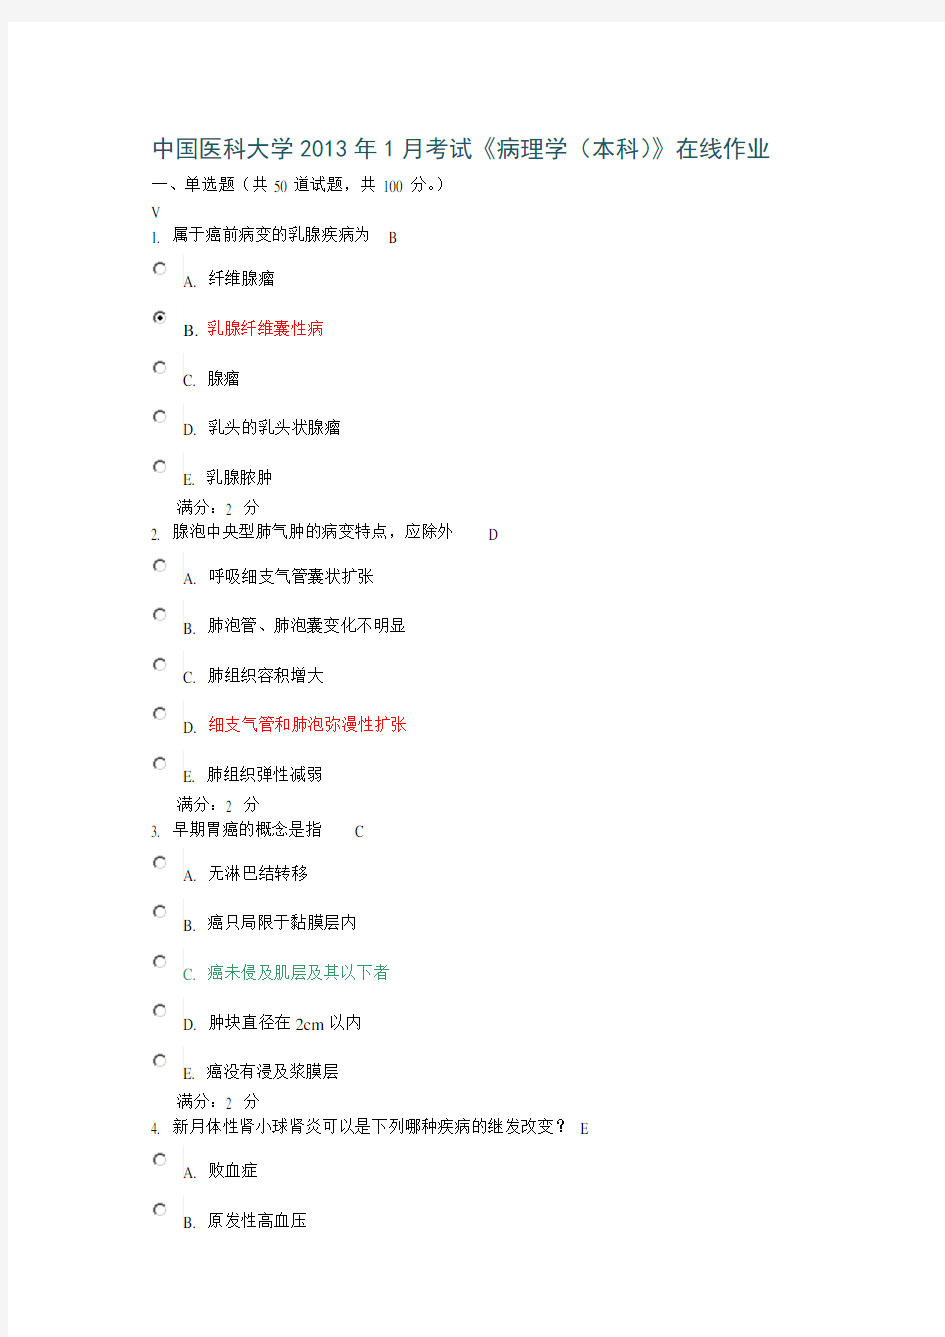 中国医科大学2013年1月考试《病理学(本科)》在线作业和100分答案